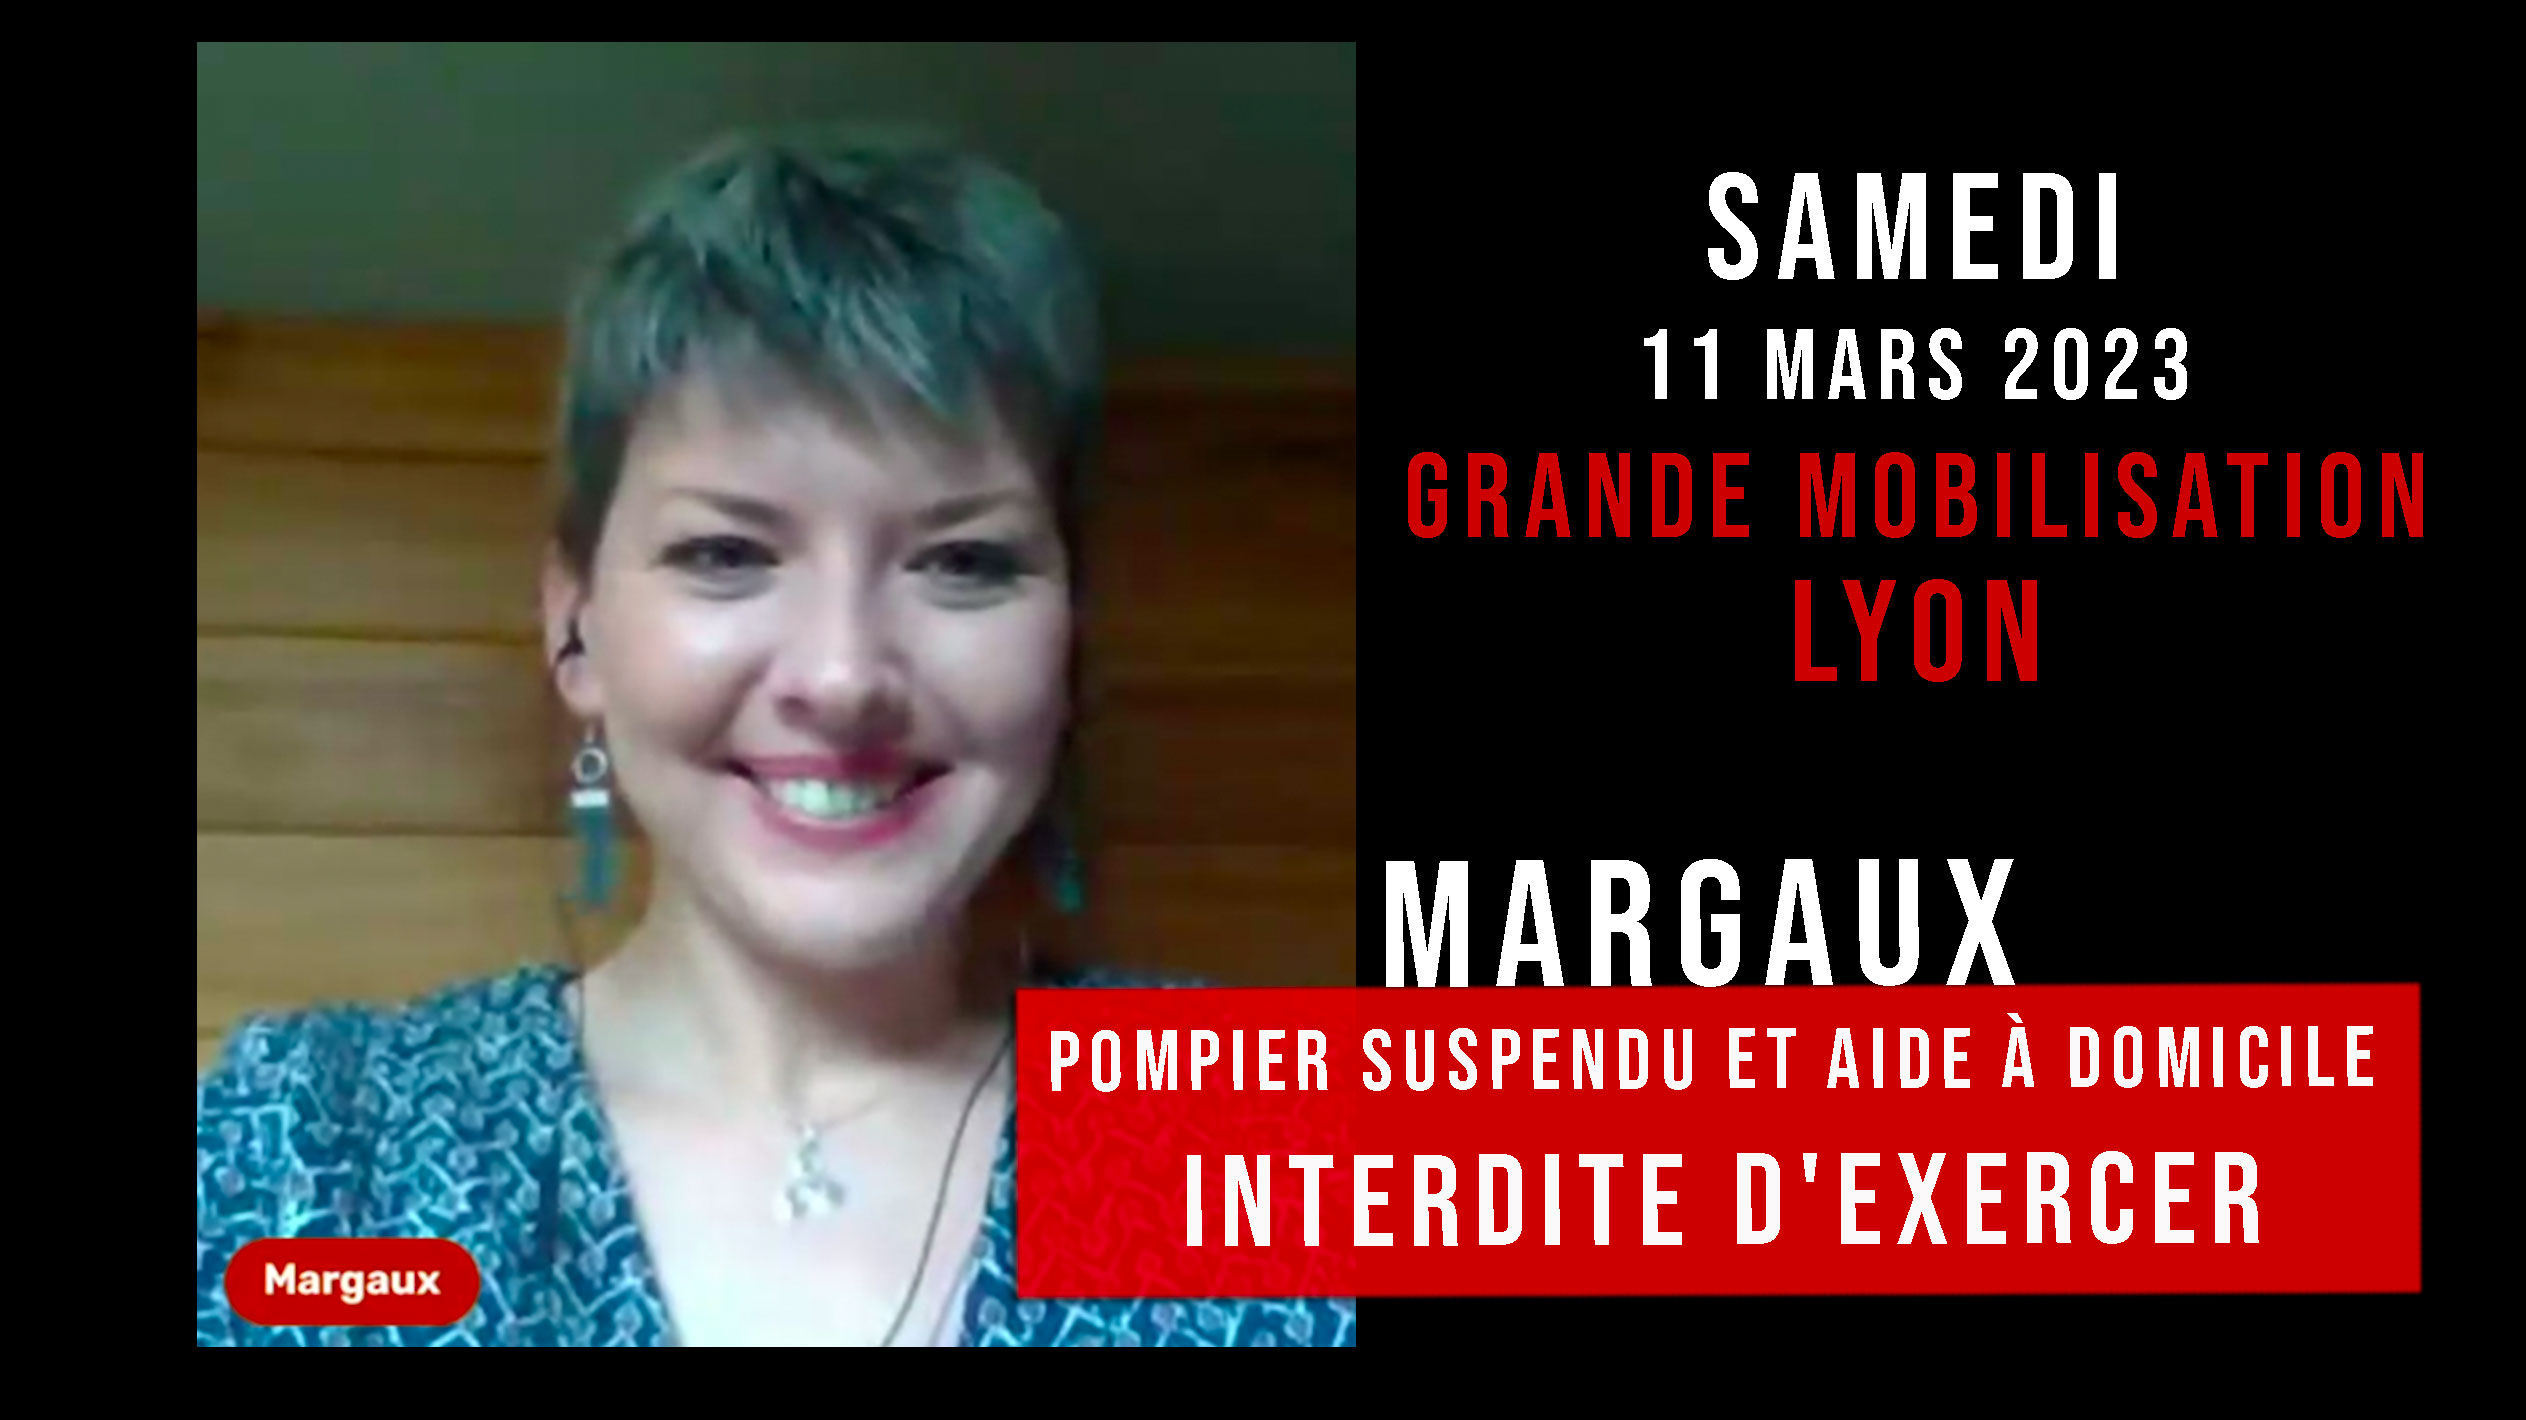 GRANDE MOBILISATION - LYON - ITW de Margaux pompier suspendu